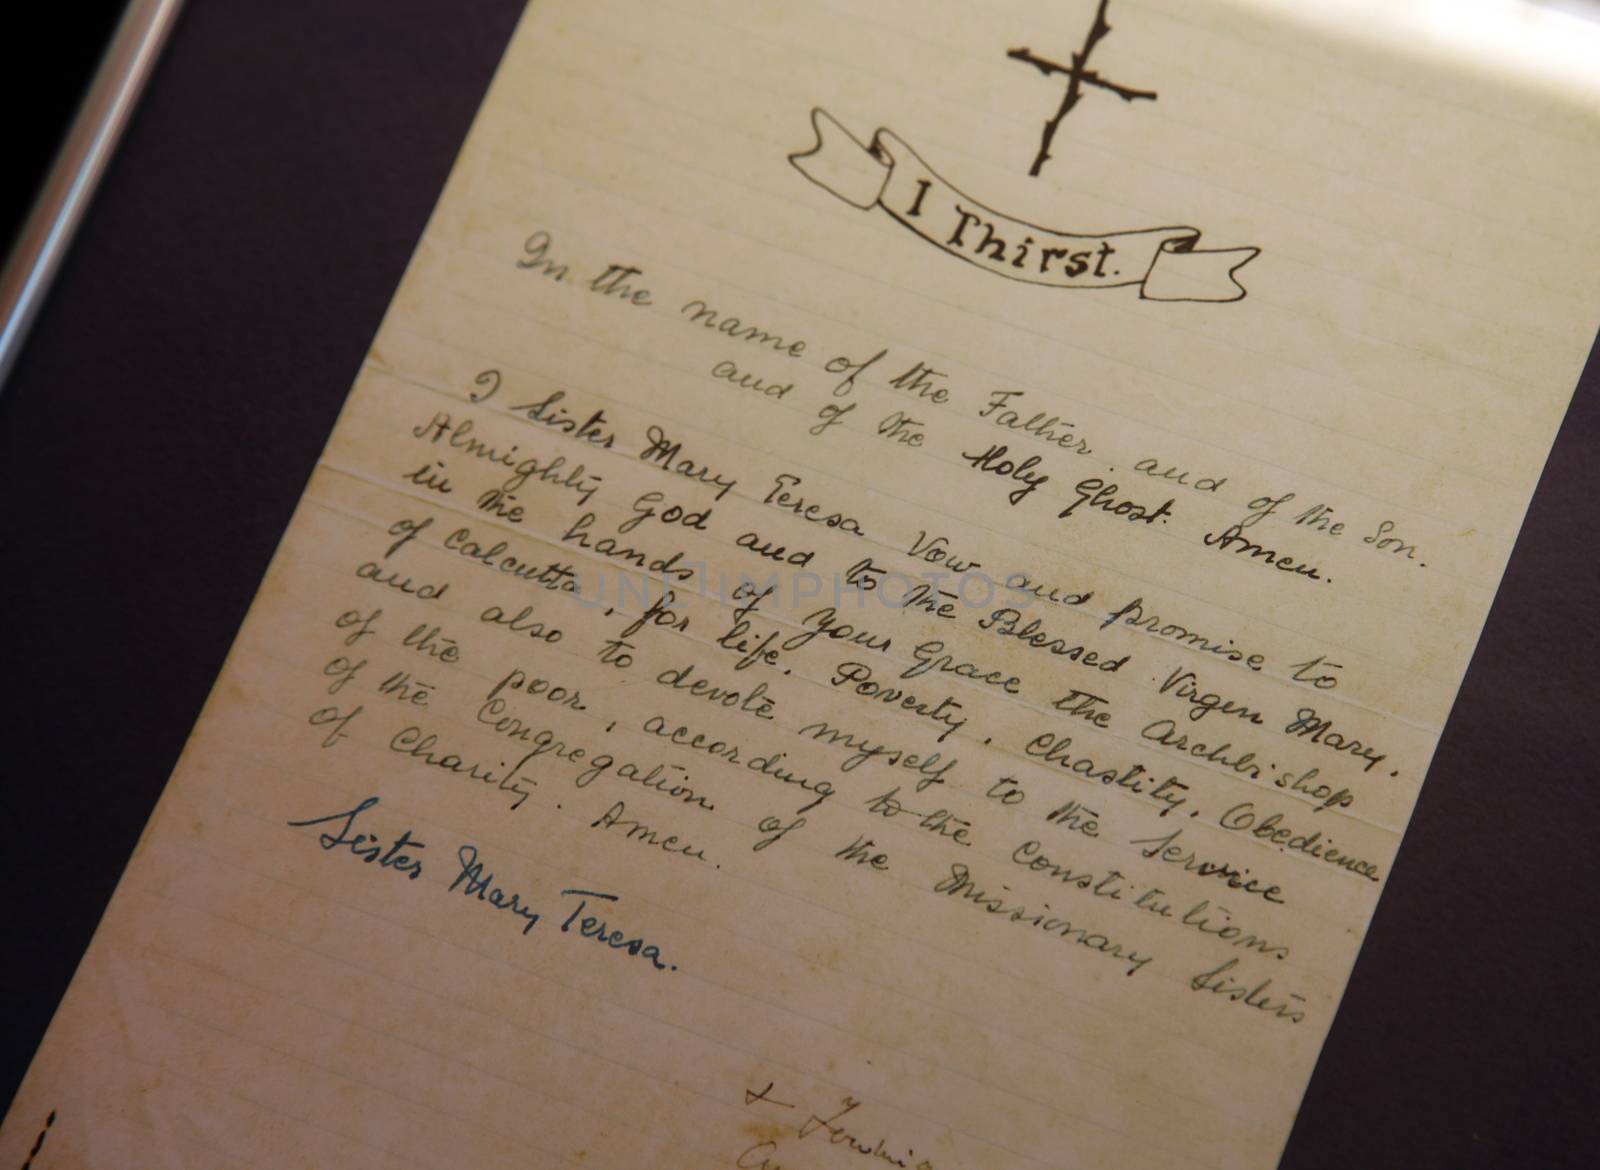 Vows of Mother Teresa written in her hand exposed in Memorial House in Skopje, Macedonia